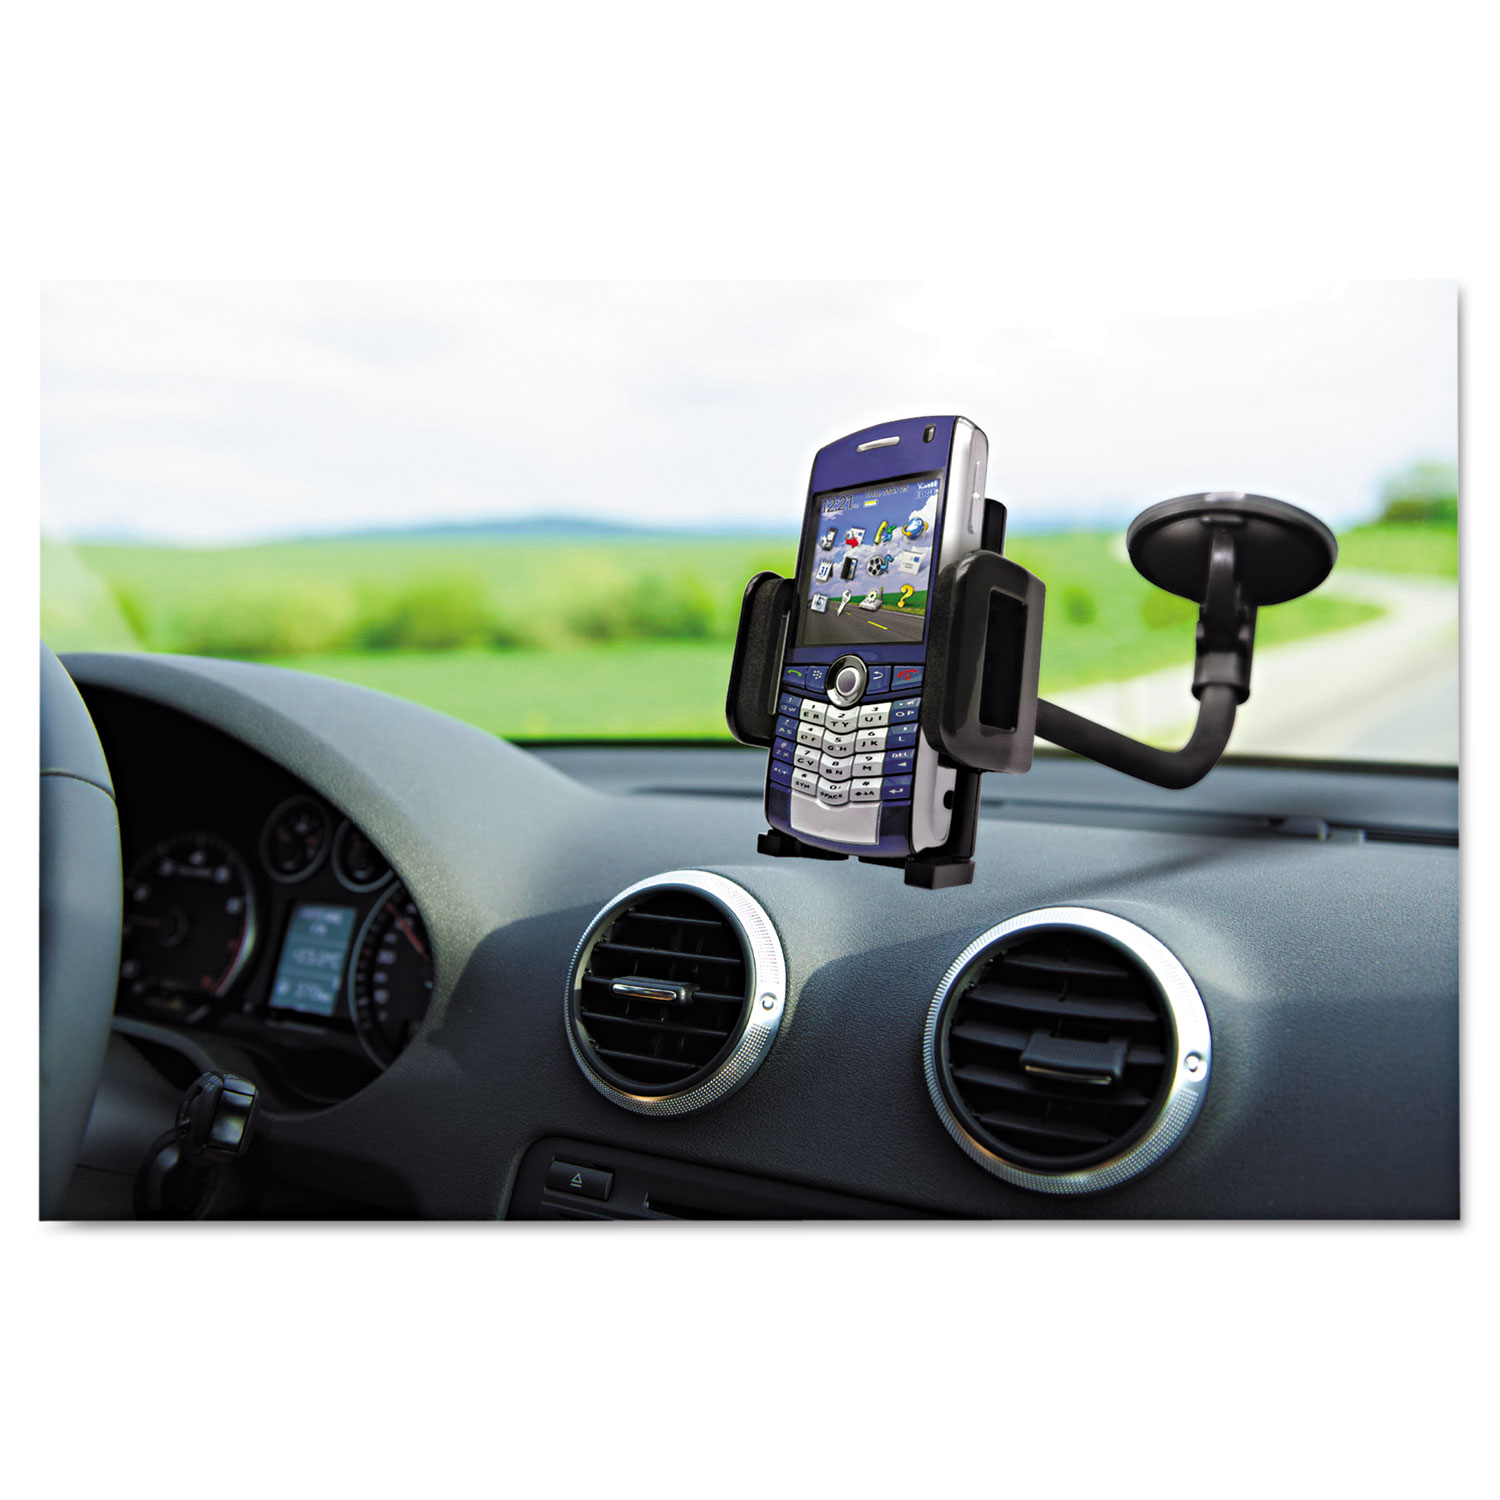 Windshield/Vent Car Mount for Smartphones, Black